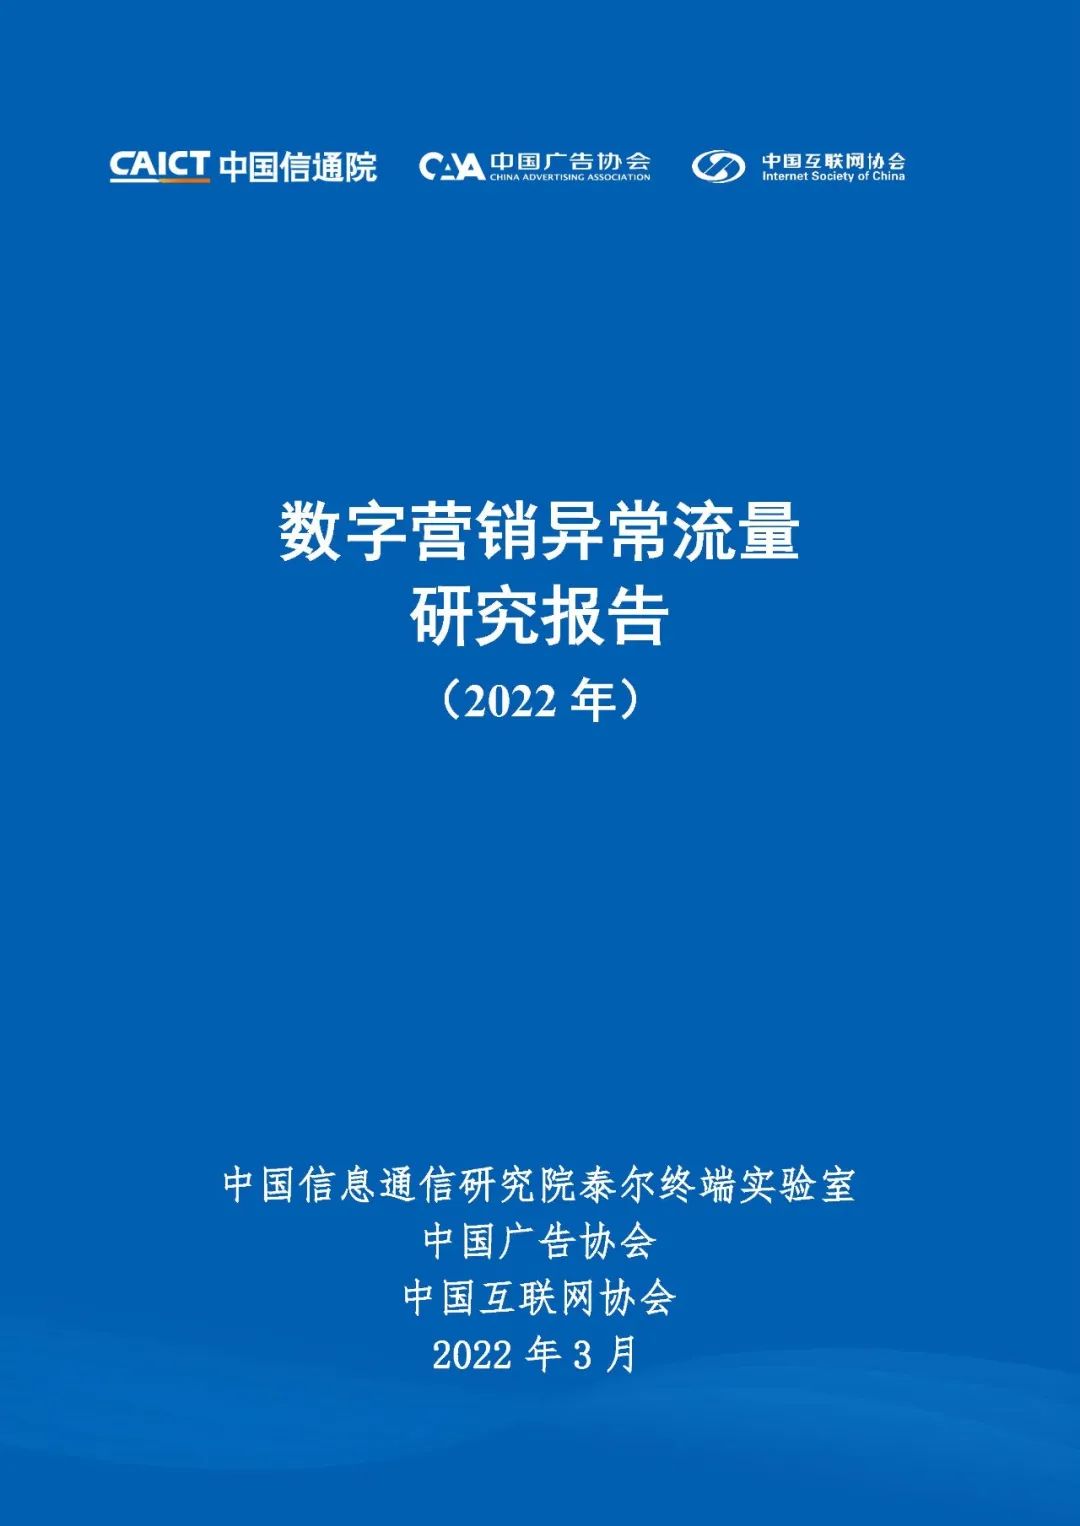 中国信通院联合中国互联网协会、中国广告协会发布《数字营销异常流量研究报告（2022年）》